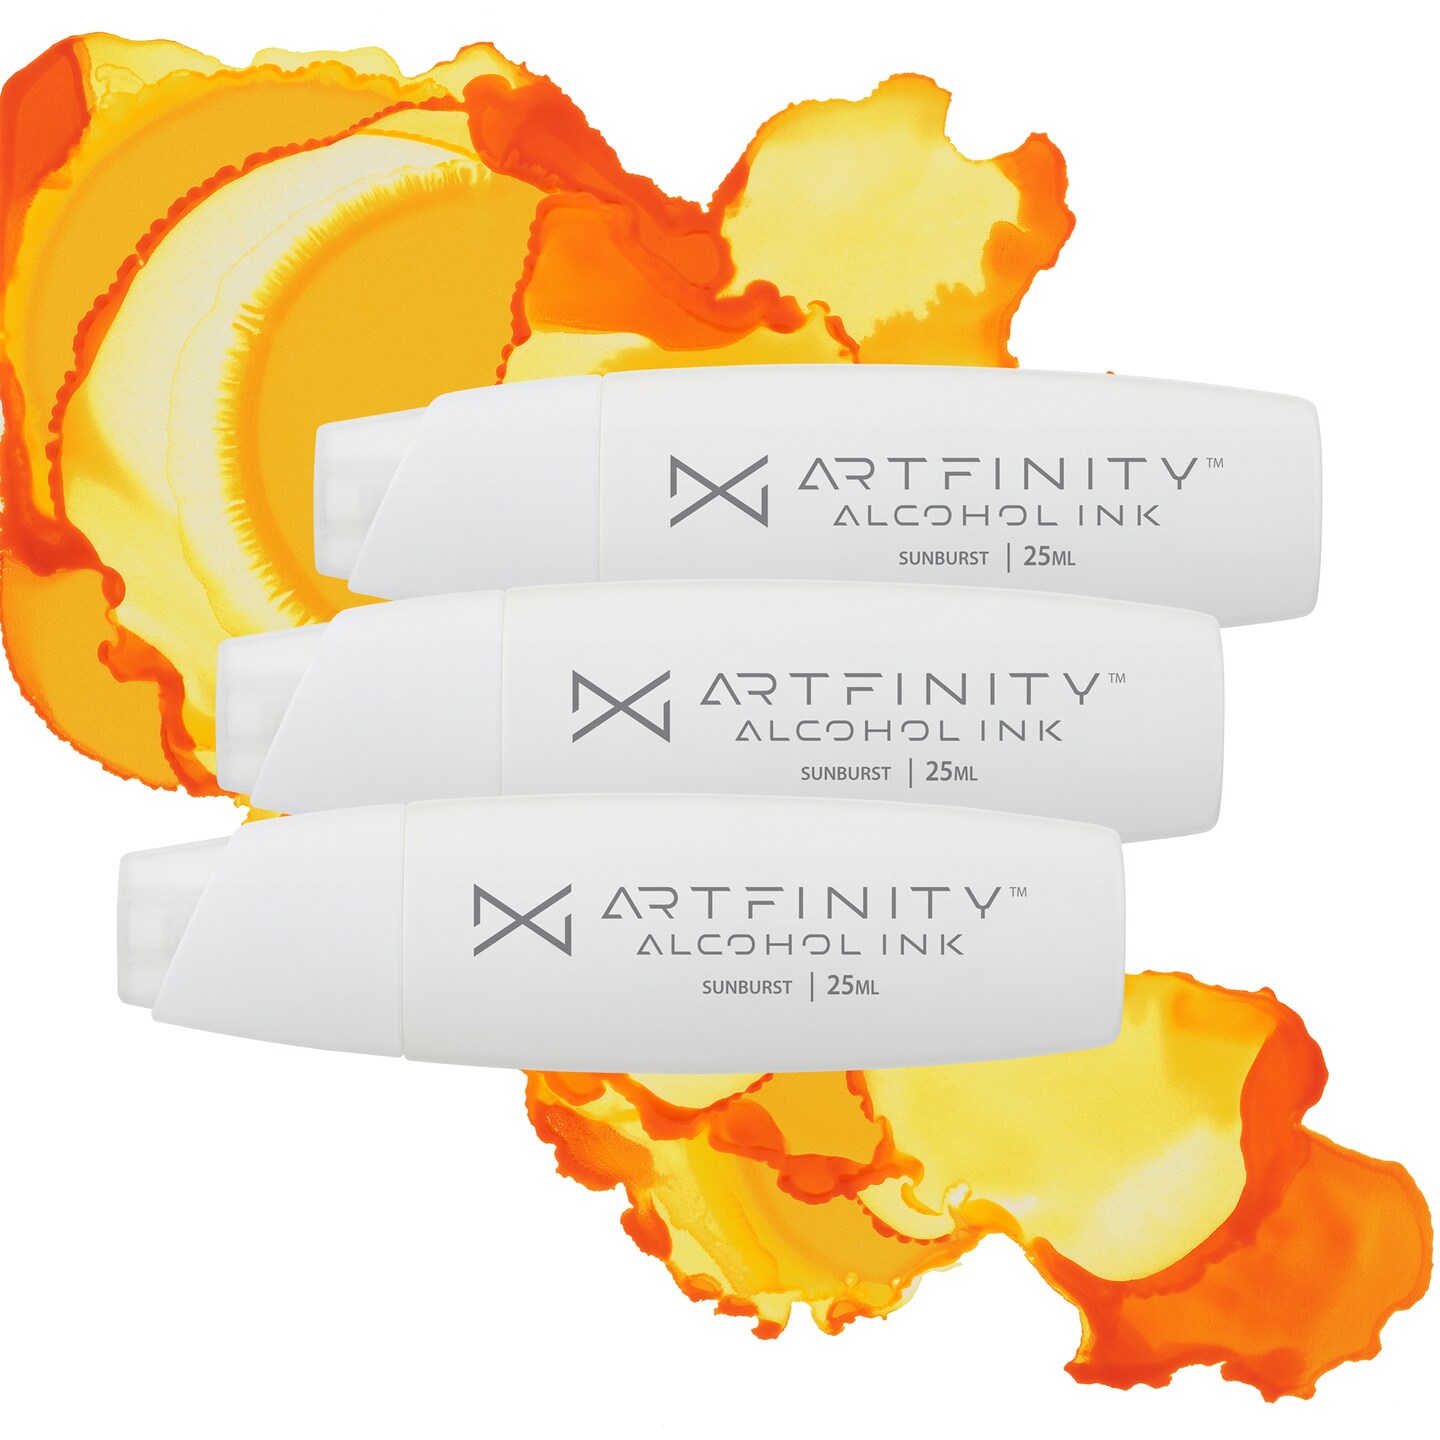 Artfinity® Alcohol Inks